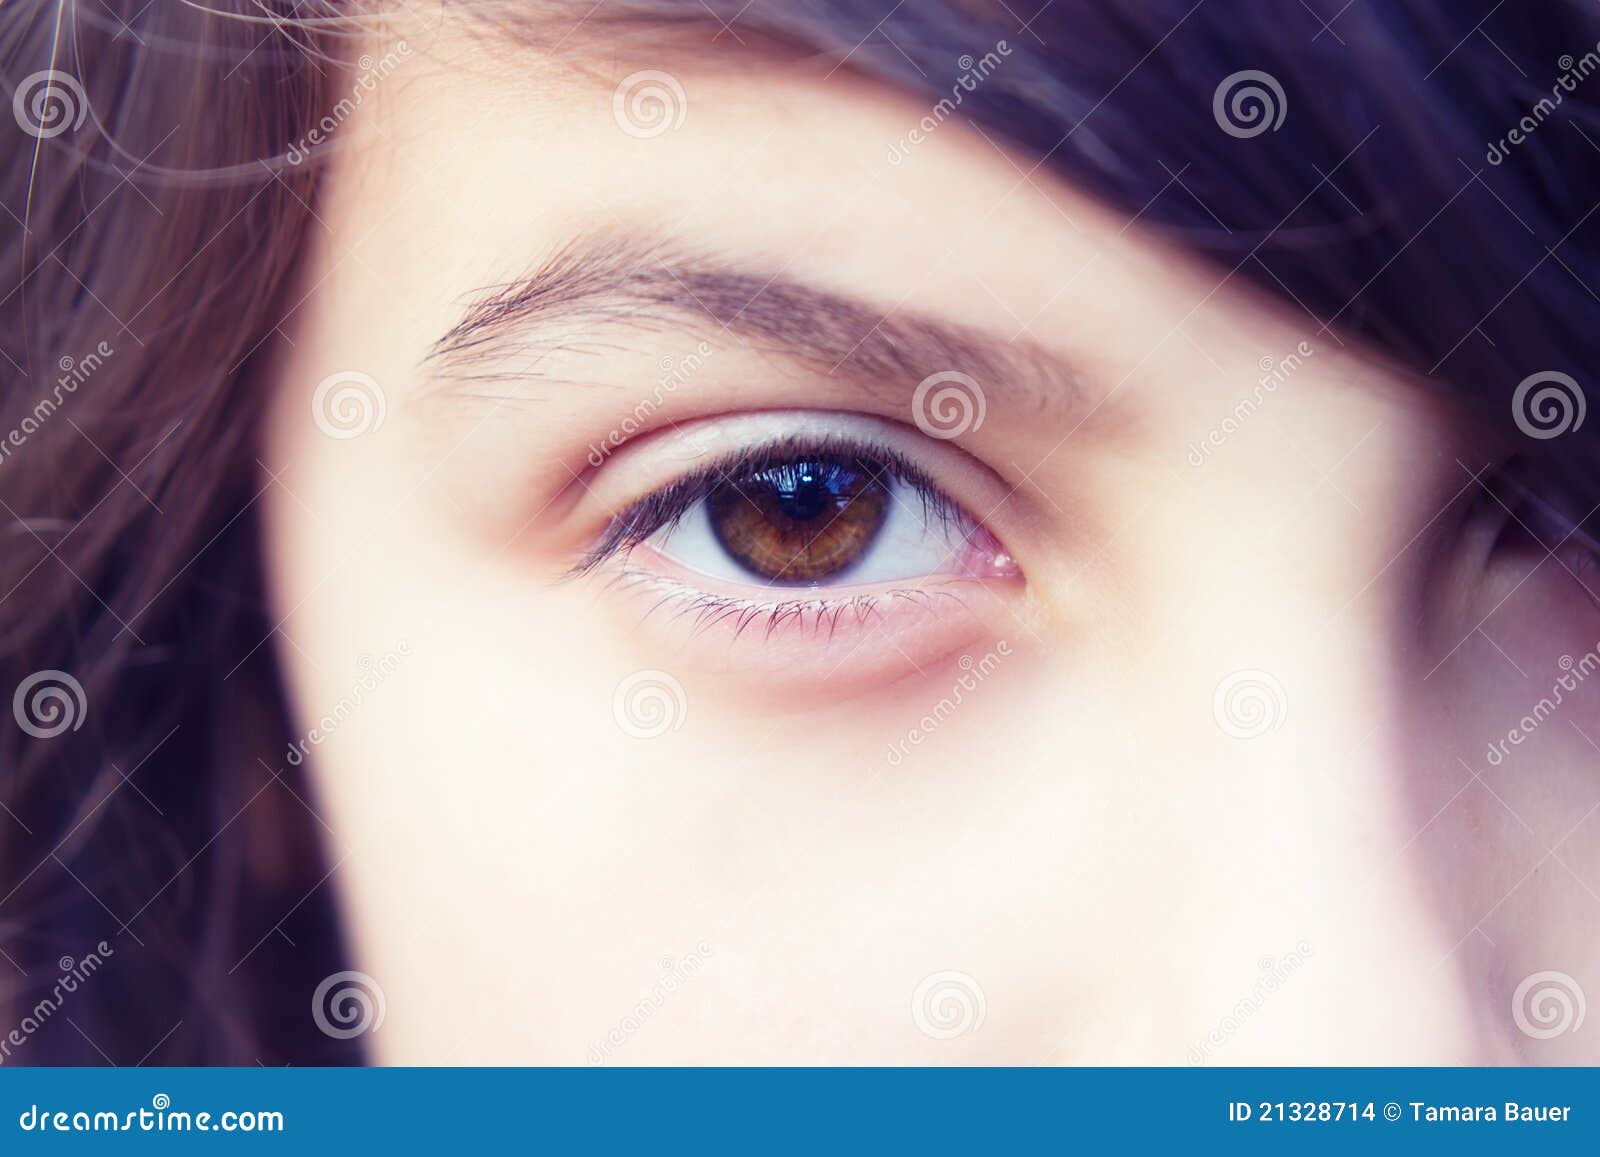 eye of a girl